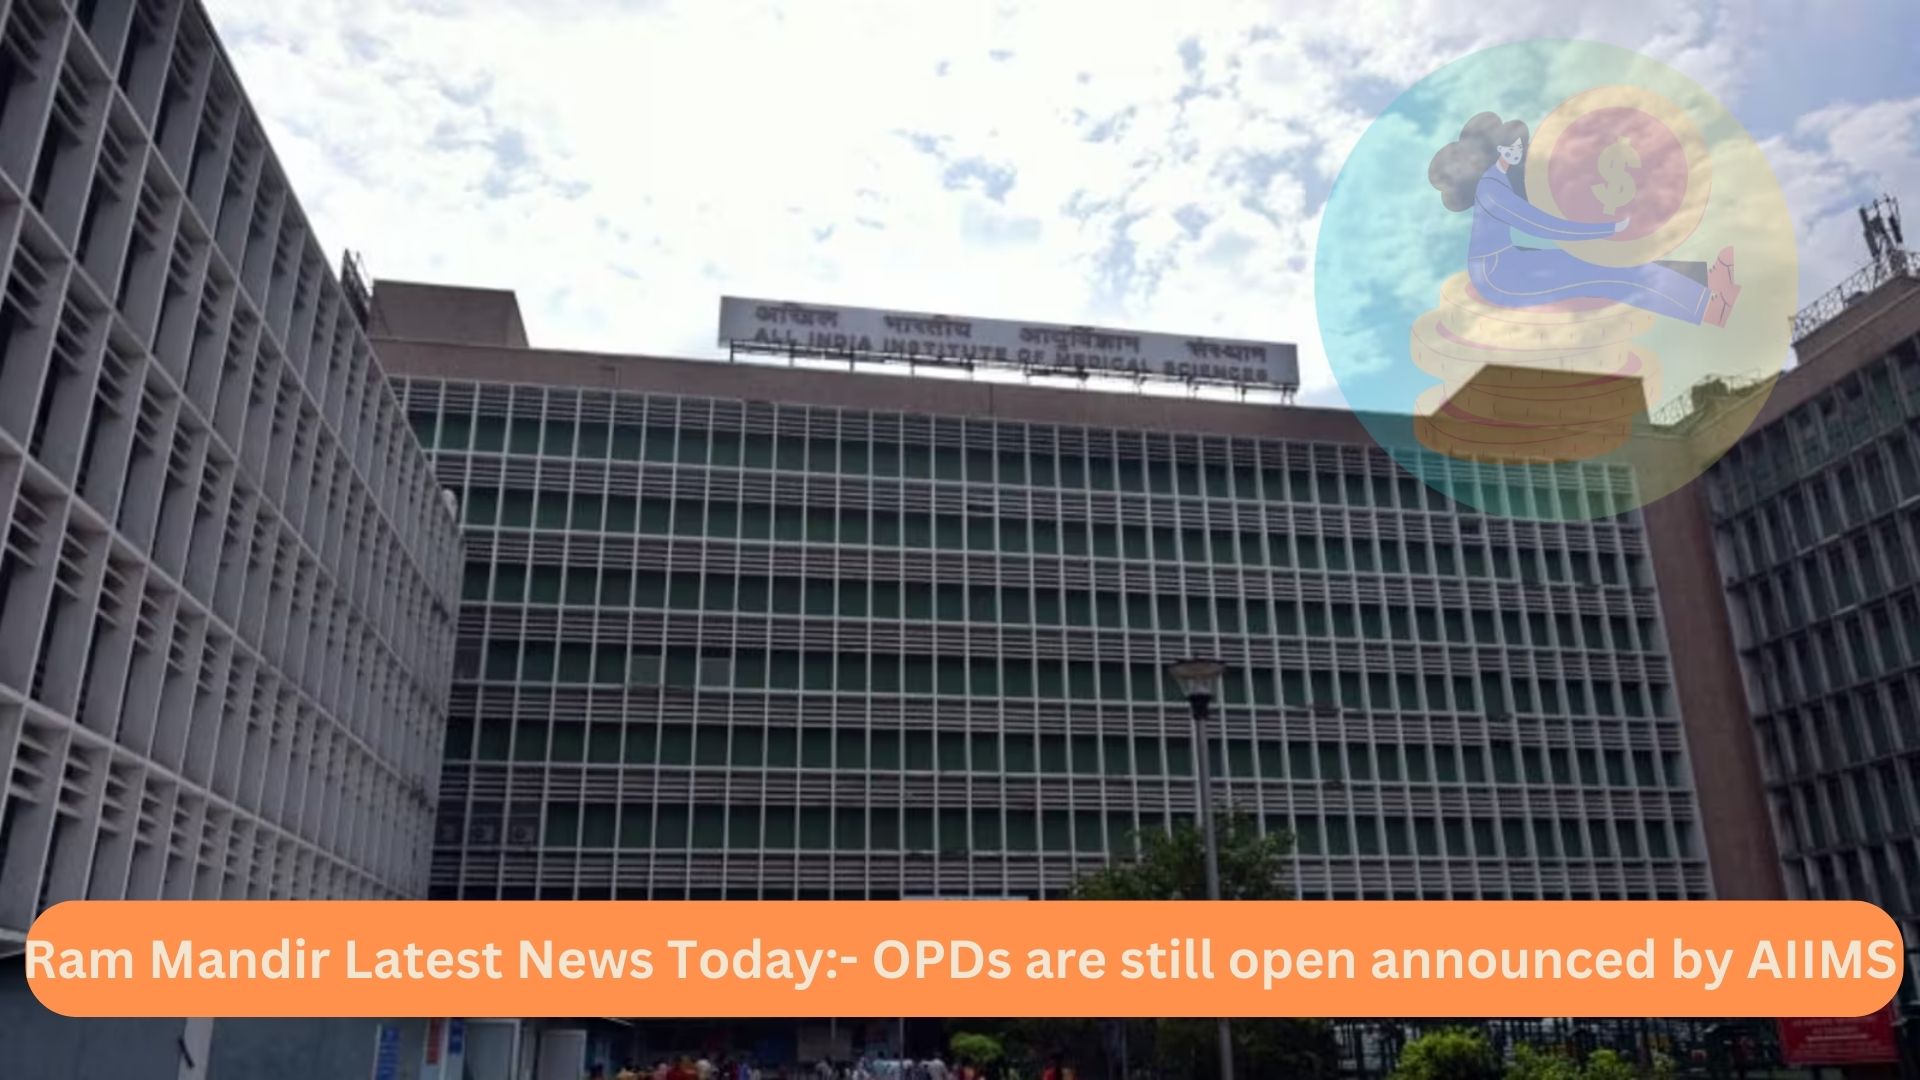 Ram Mandir Latest News Today- OPDs are still open announced by AIIMS